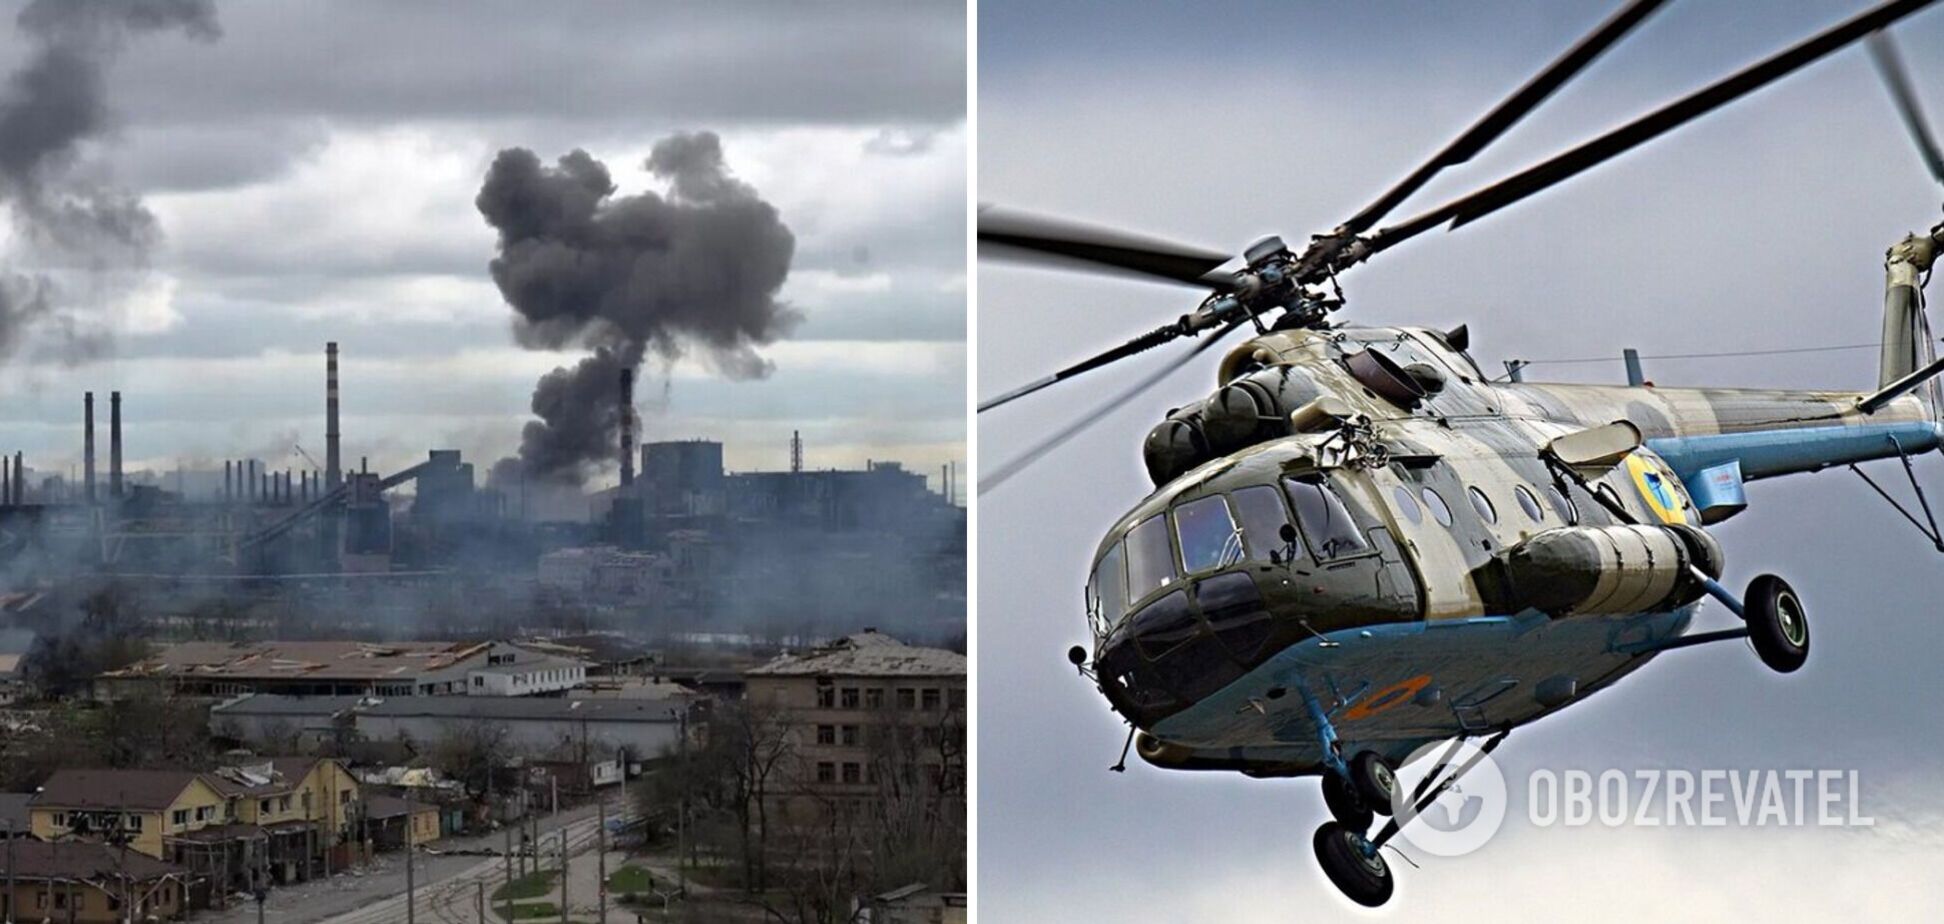 Під час авіапрориву блокади Маріуполя ЗСУ втратили три вертольоти